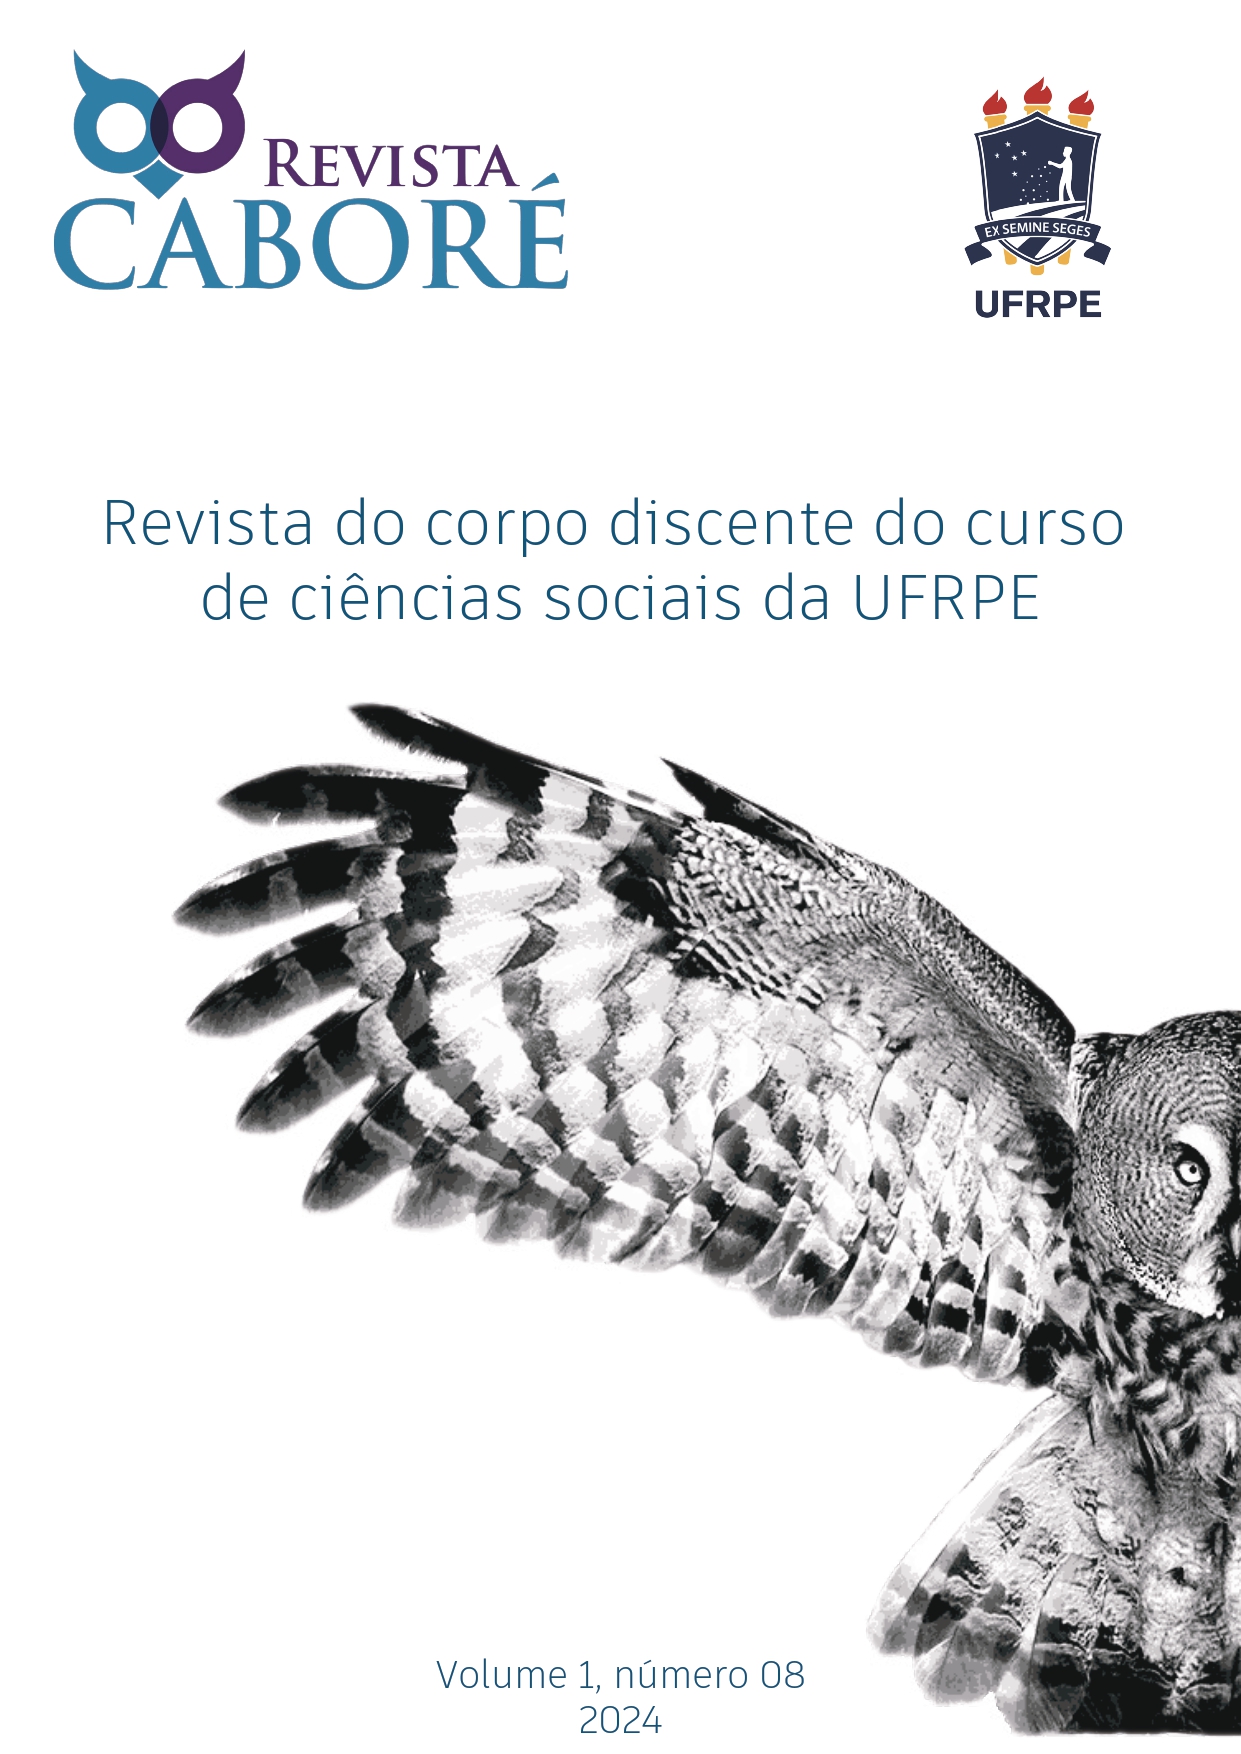 					View Vol. 1 No. 8 (2024): Revista Caboré
				